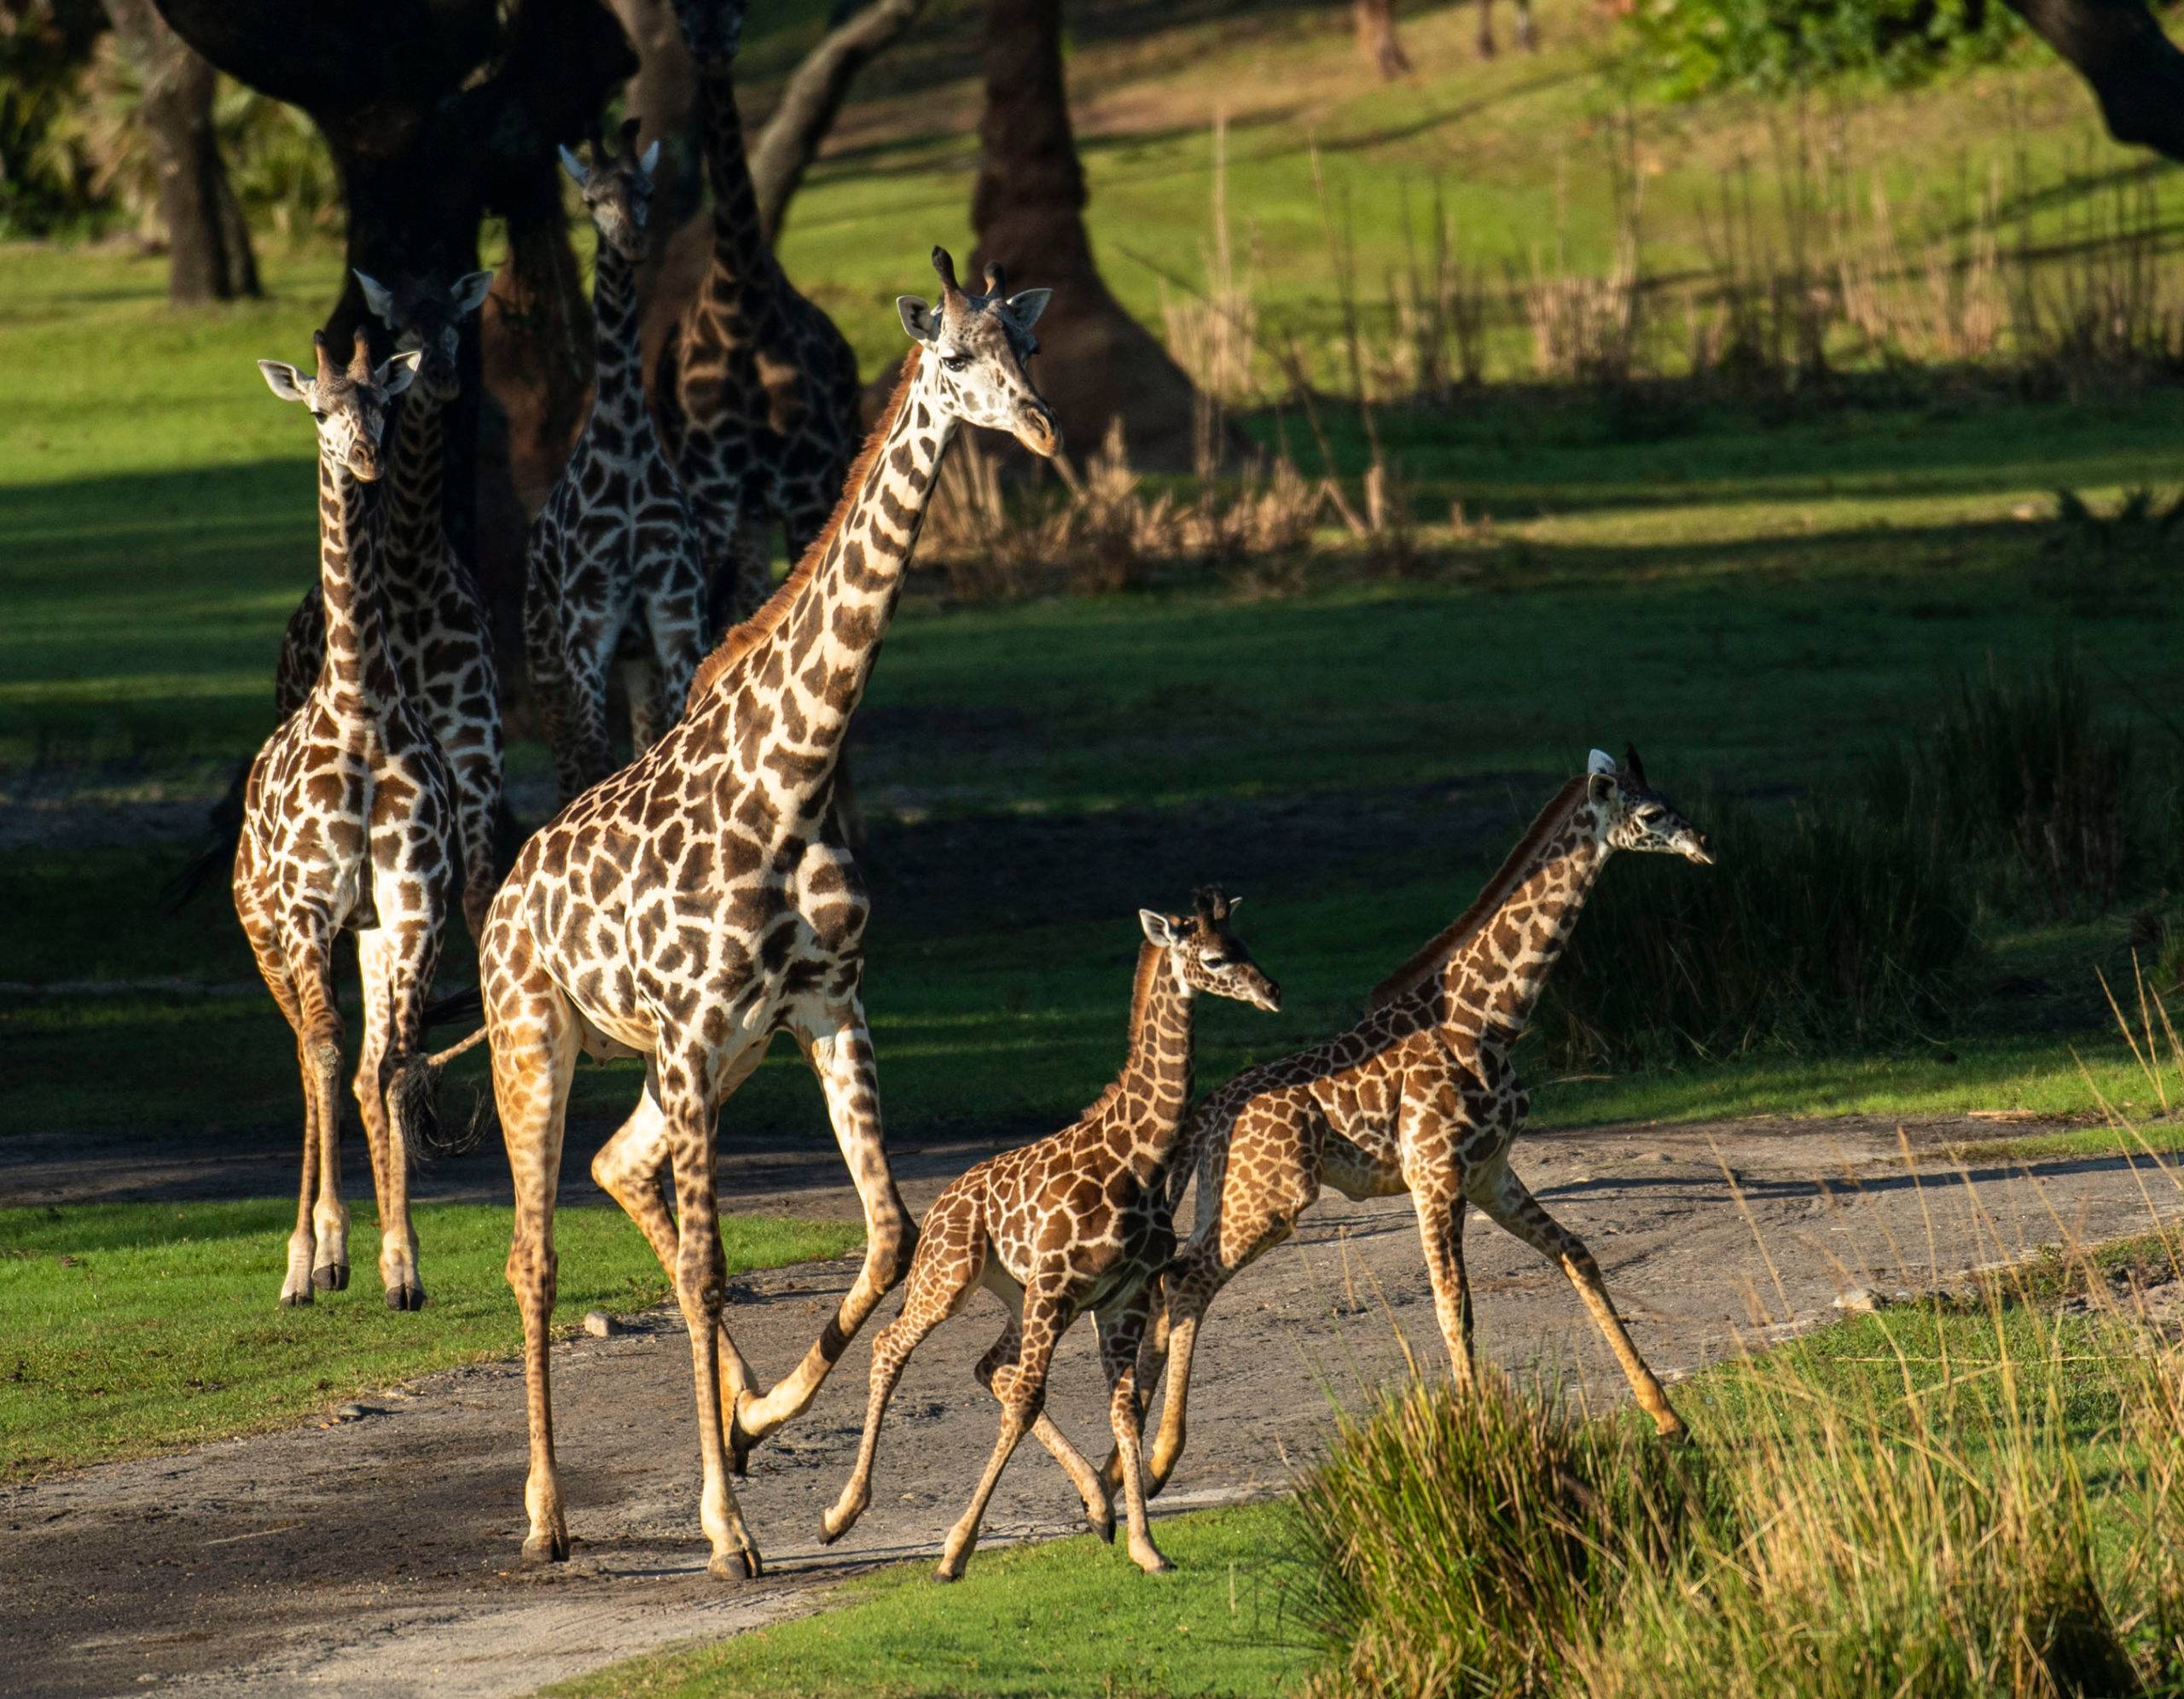 PHOTOS - Two Masai giraffe calves join the herd at Kilimanjaro Safaris